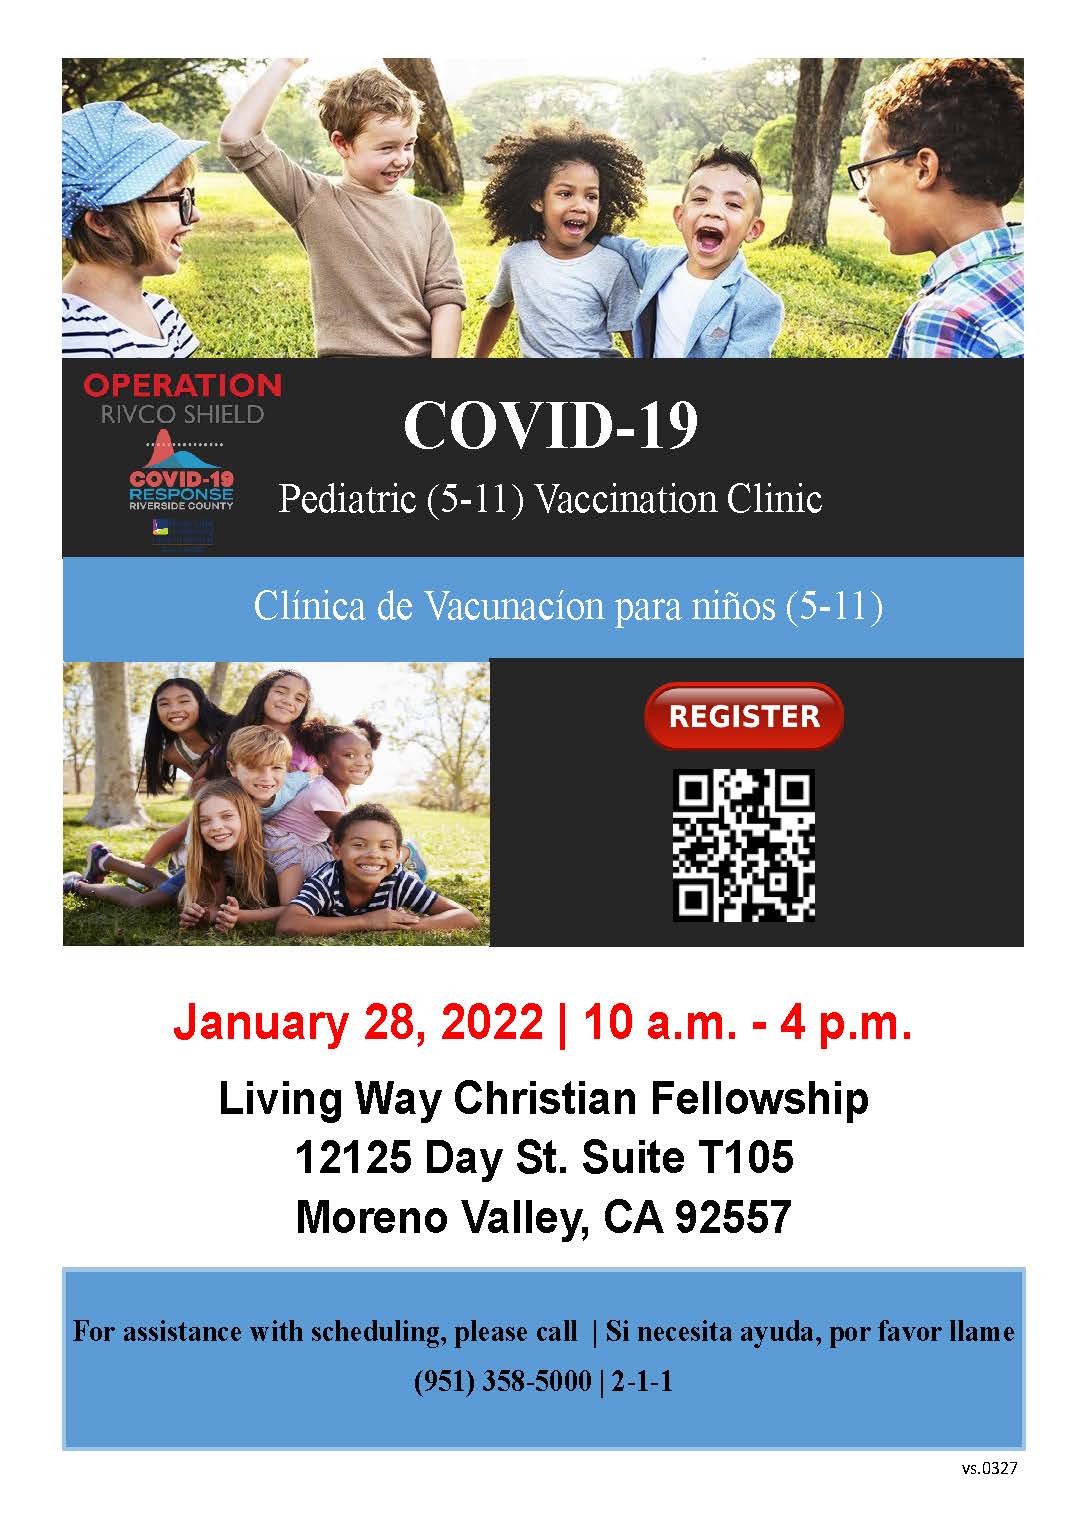 COVID-19 January 28, 2022 Vaccination